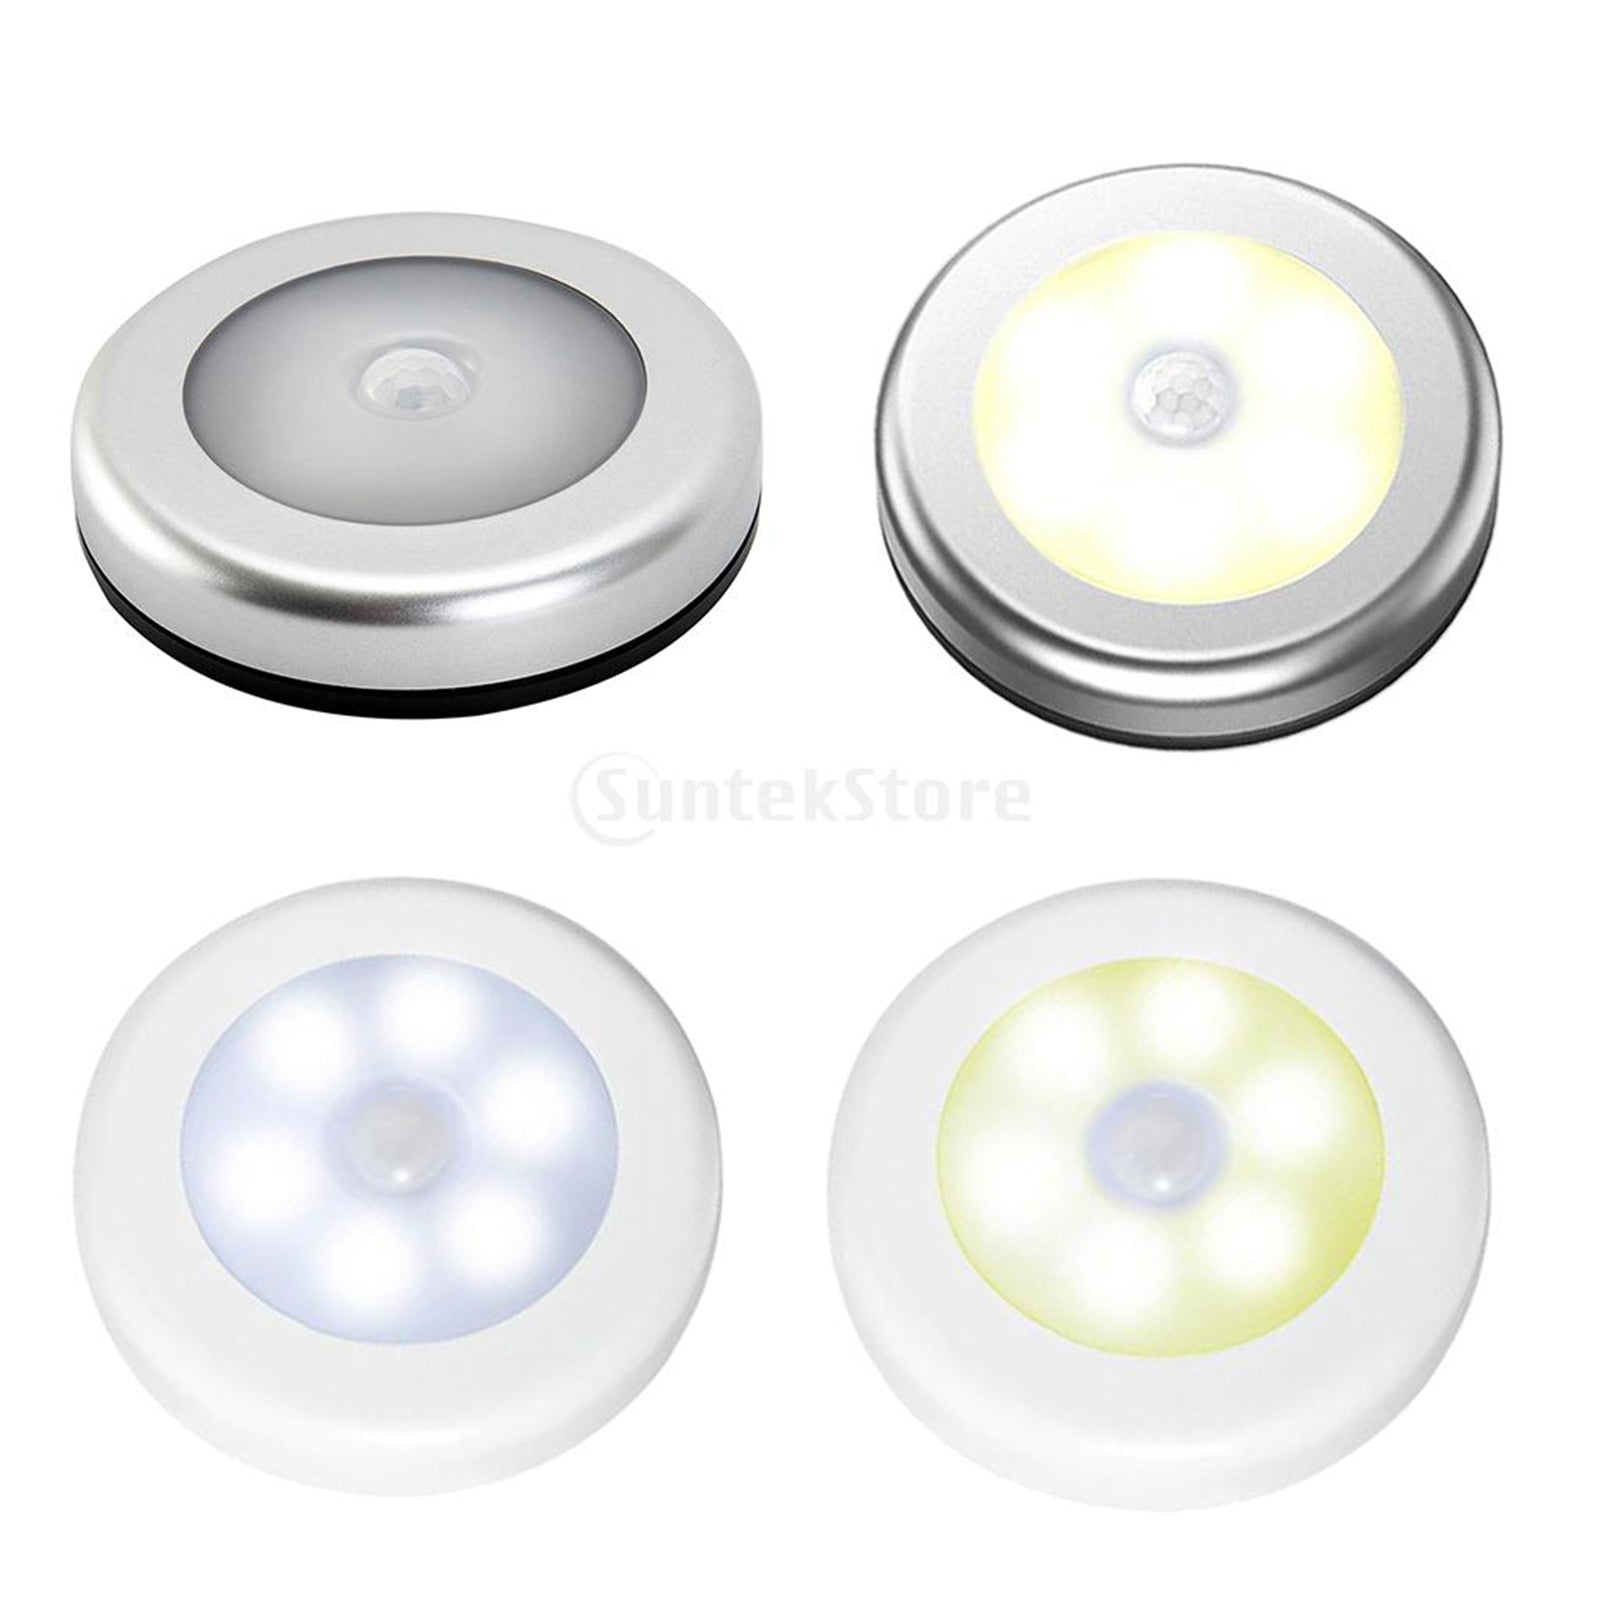 3x Infrared Motion Sensor 6 LED Light Wall Night Light Silver White Light